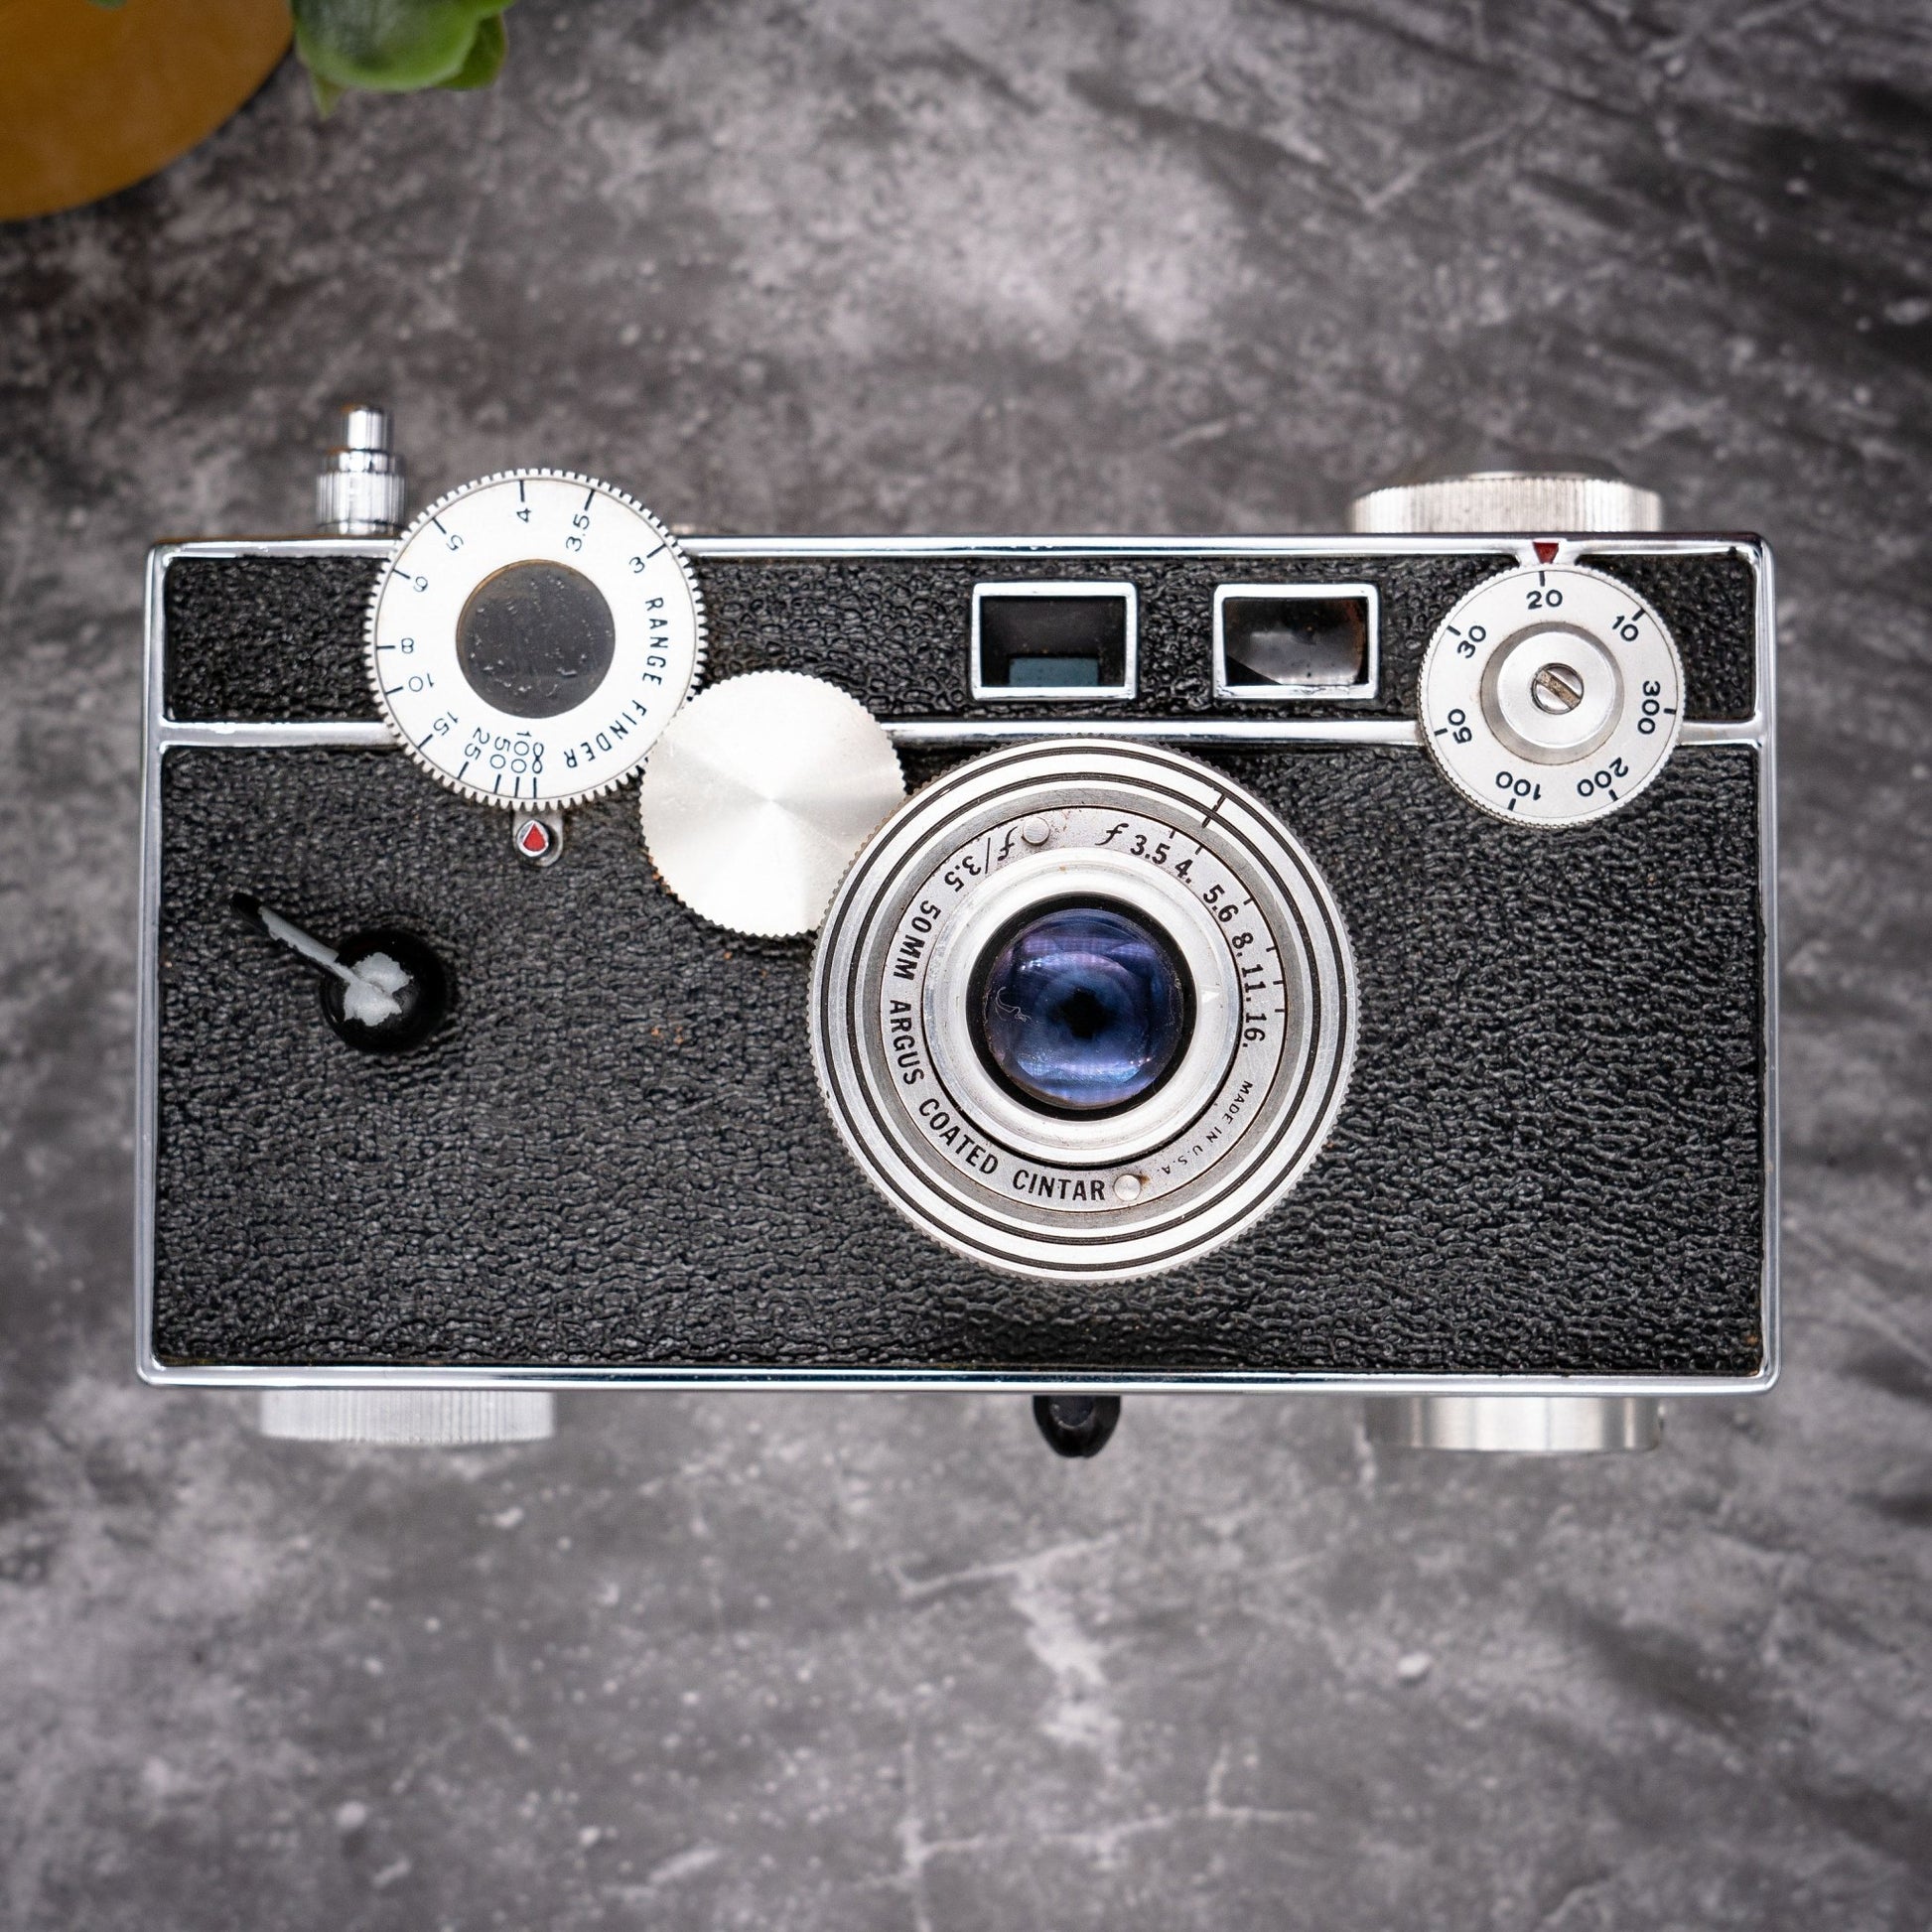 35mm Film Camera Kit | Argus C3 + Roll Of Expired Film, Original Leather Case - Expired Film Club